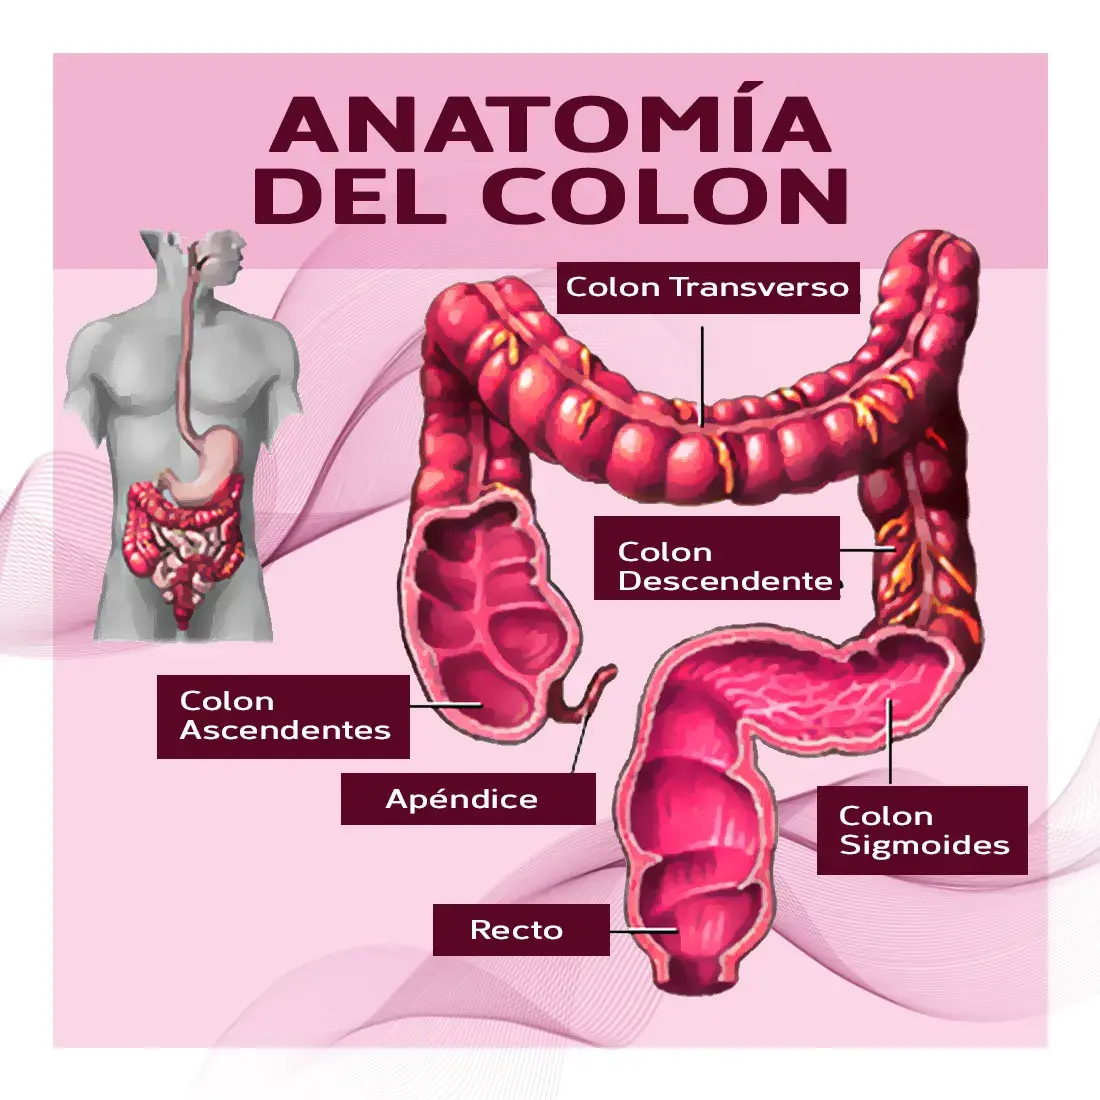 anatomía del colon ( colon ascendente, colon transverso, colon descendente, colon sigmoides, apéndice, recto).